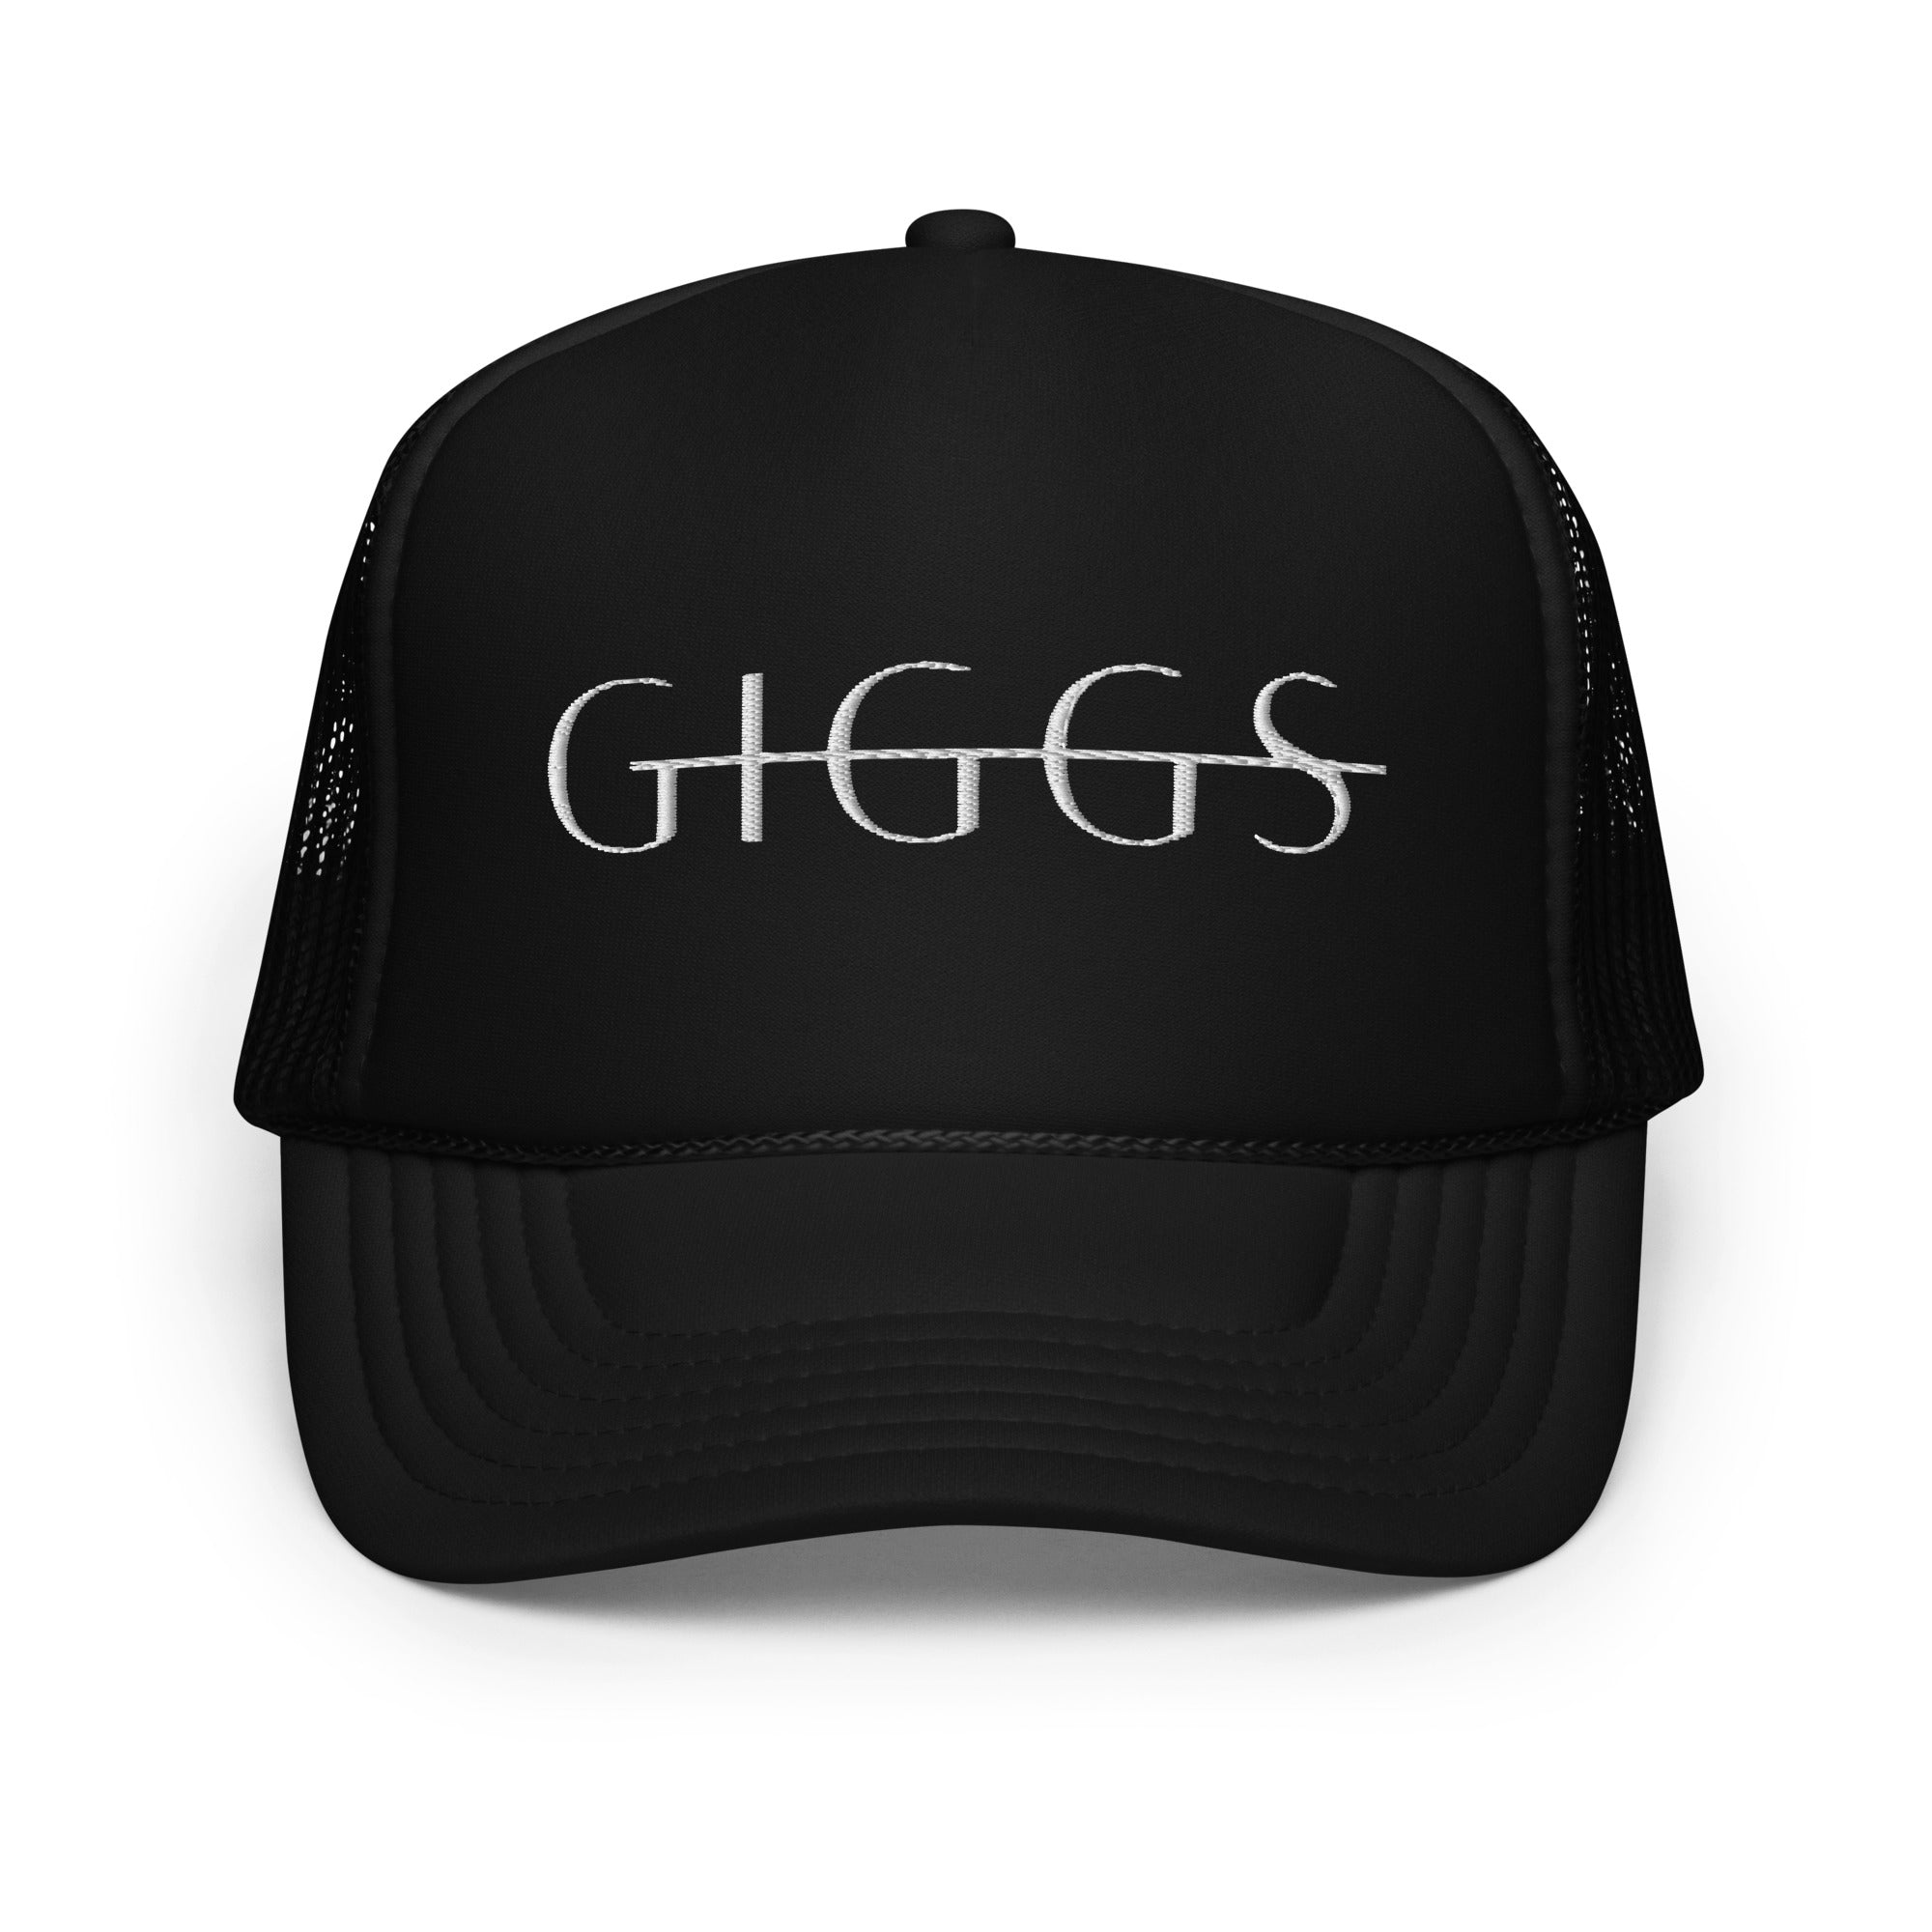 Giggs Foam Trucker Hat